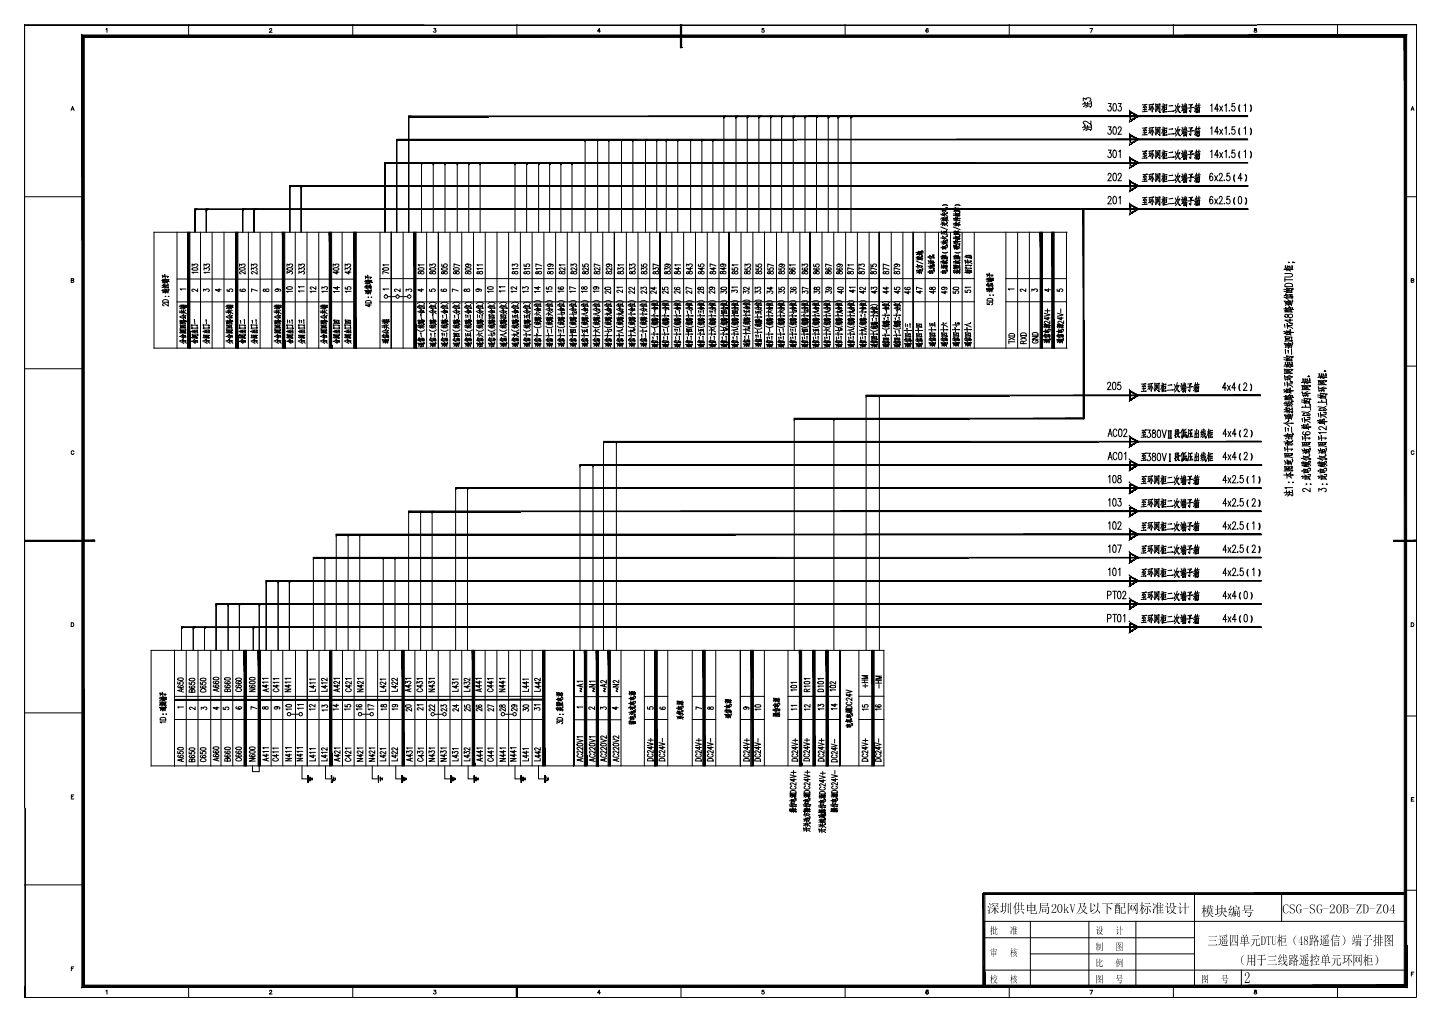 CSG-SG-20B-ZD-Z04-2 三遥四单元DTU柜端子排图（用于三线路遥控单元环网柜）.dwg